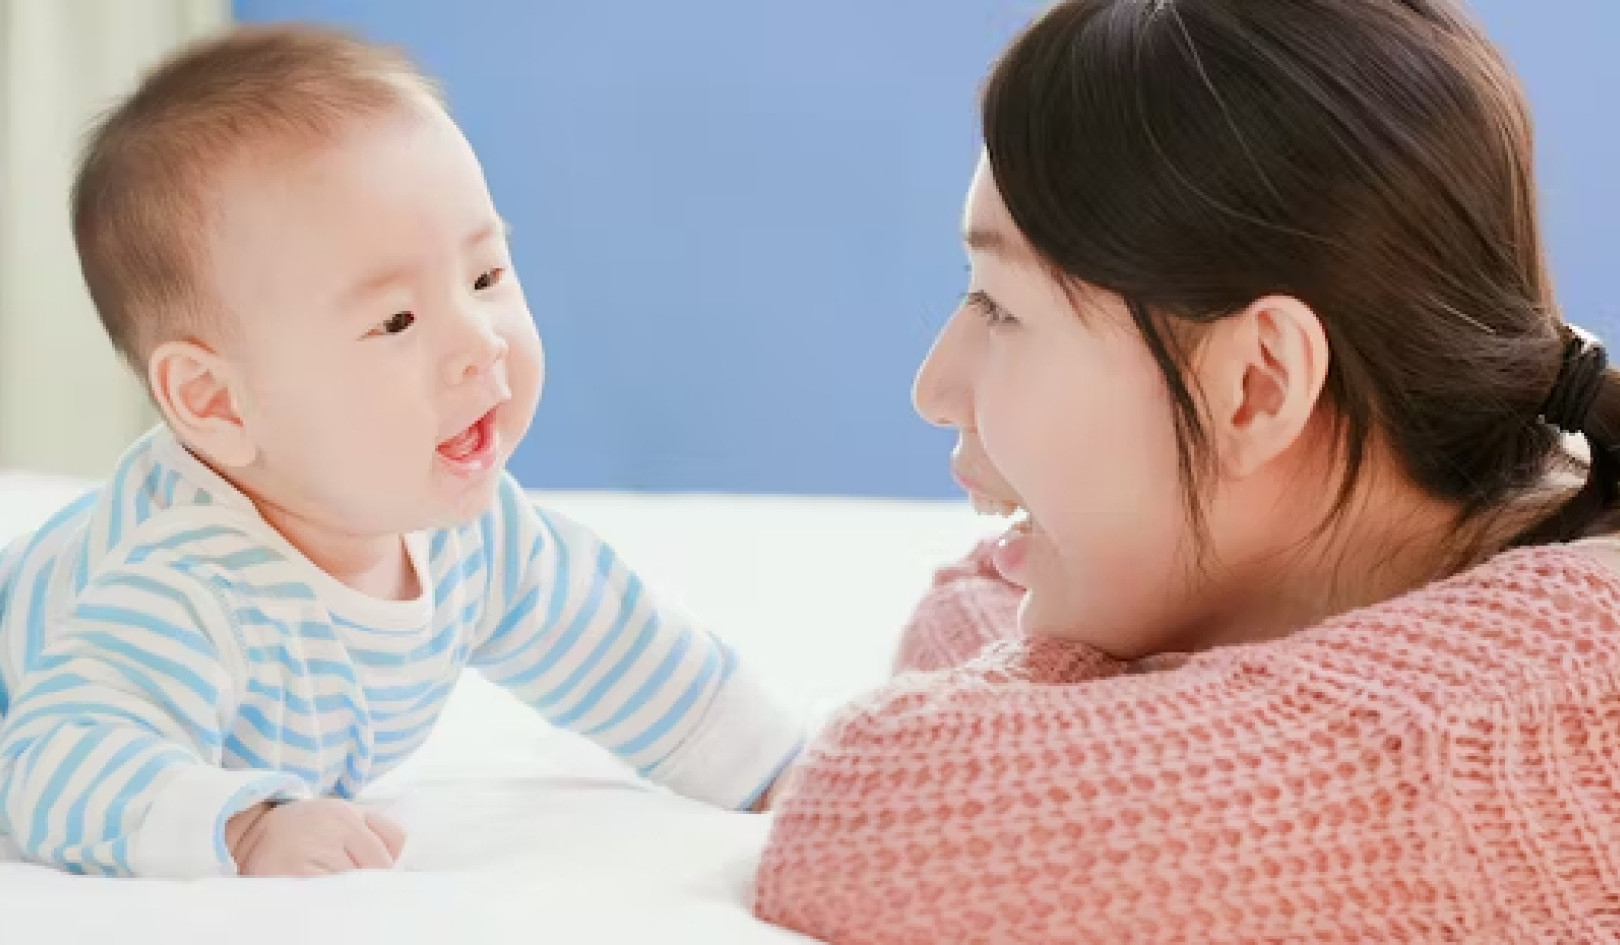 Berbicara dengan Bayi Dapat Berkontribusi pada Perkembangan Otak - Inilah Cara Melakukannya